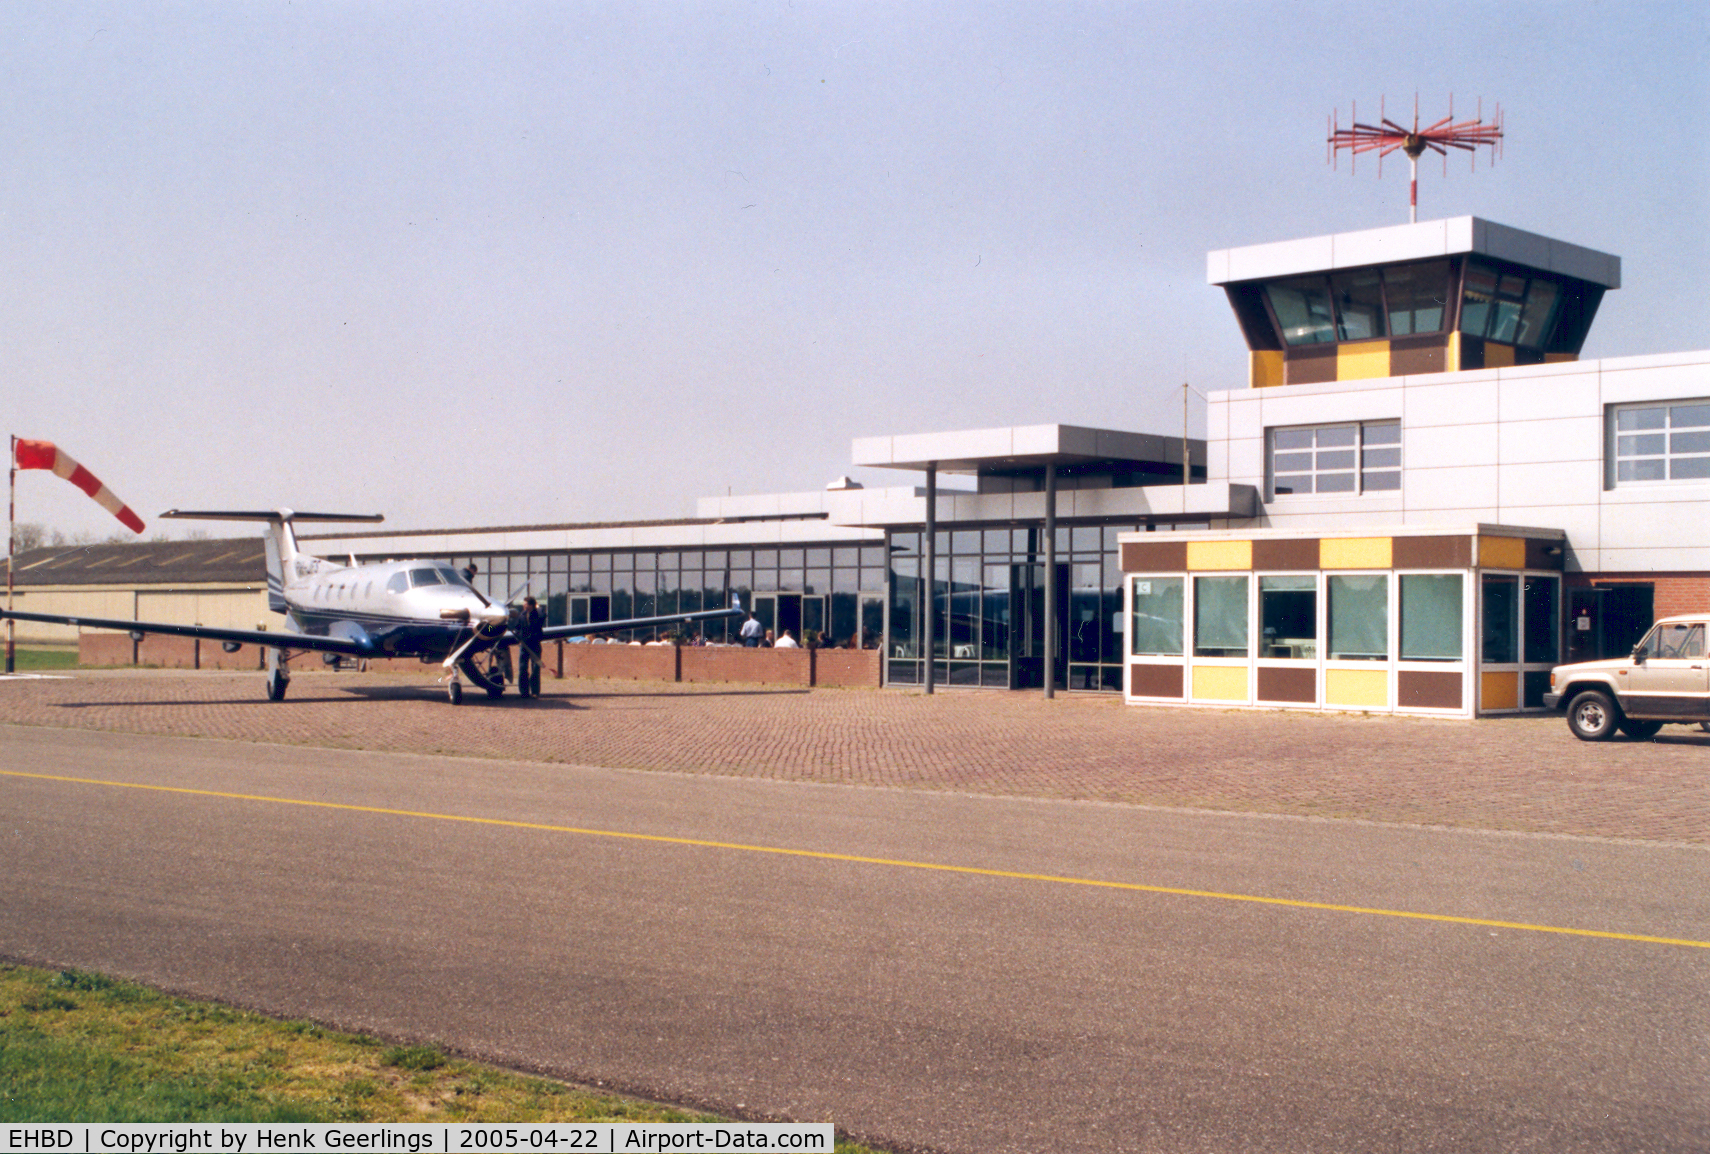 Budel Airport, Weert Netherlands (EHBD) - De Kempen Airport